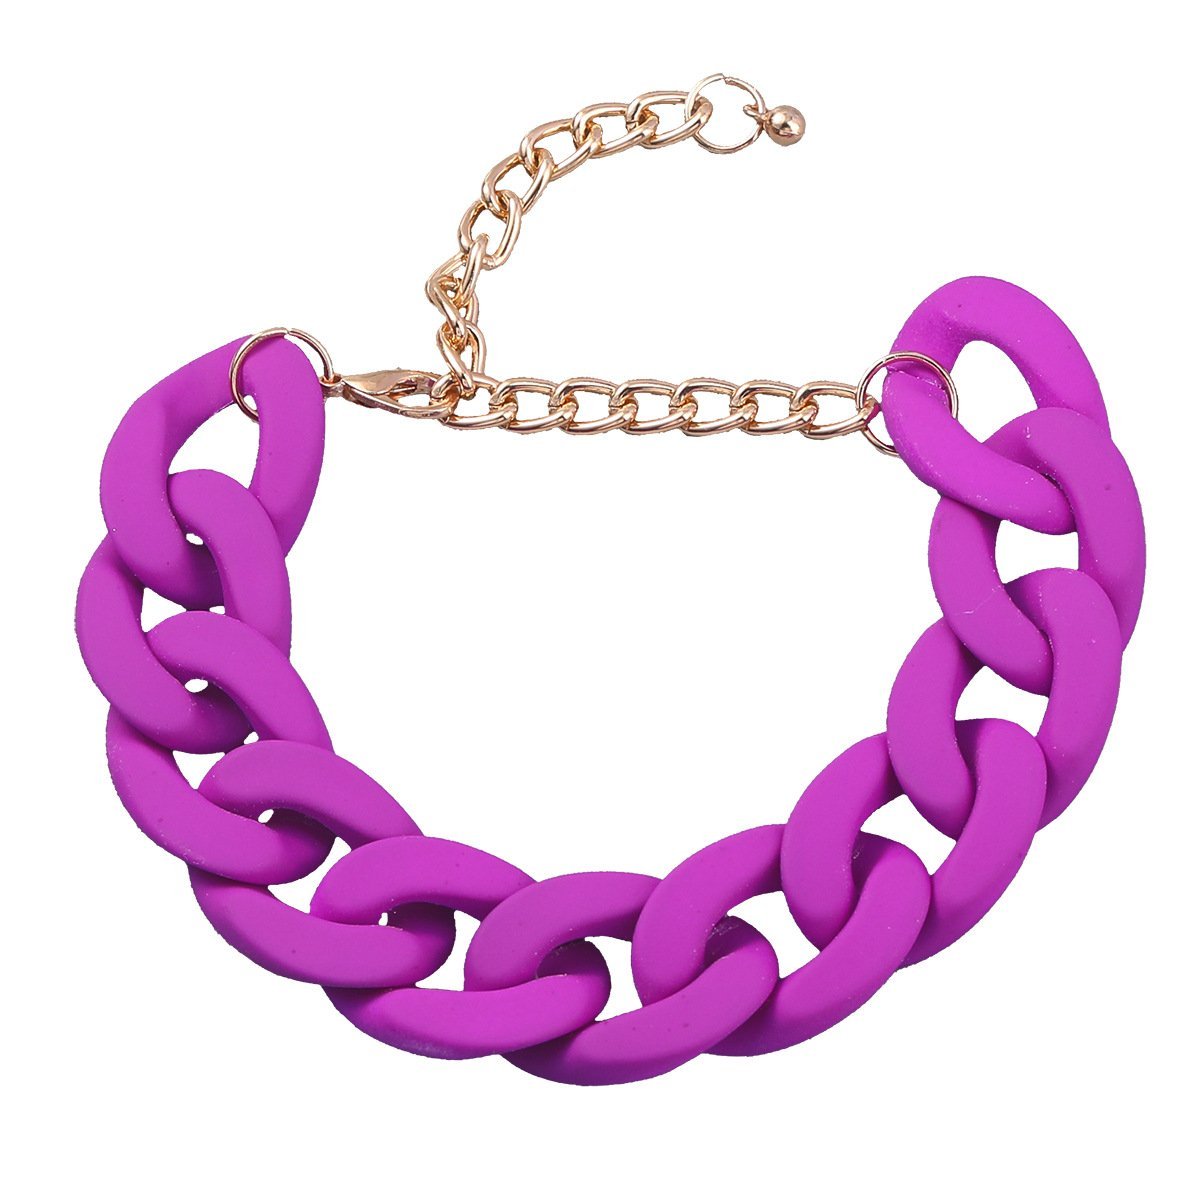 Women's Fashion Solid colour Hard Rubber Bracelet